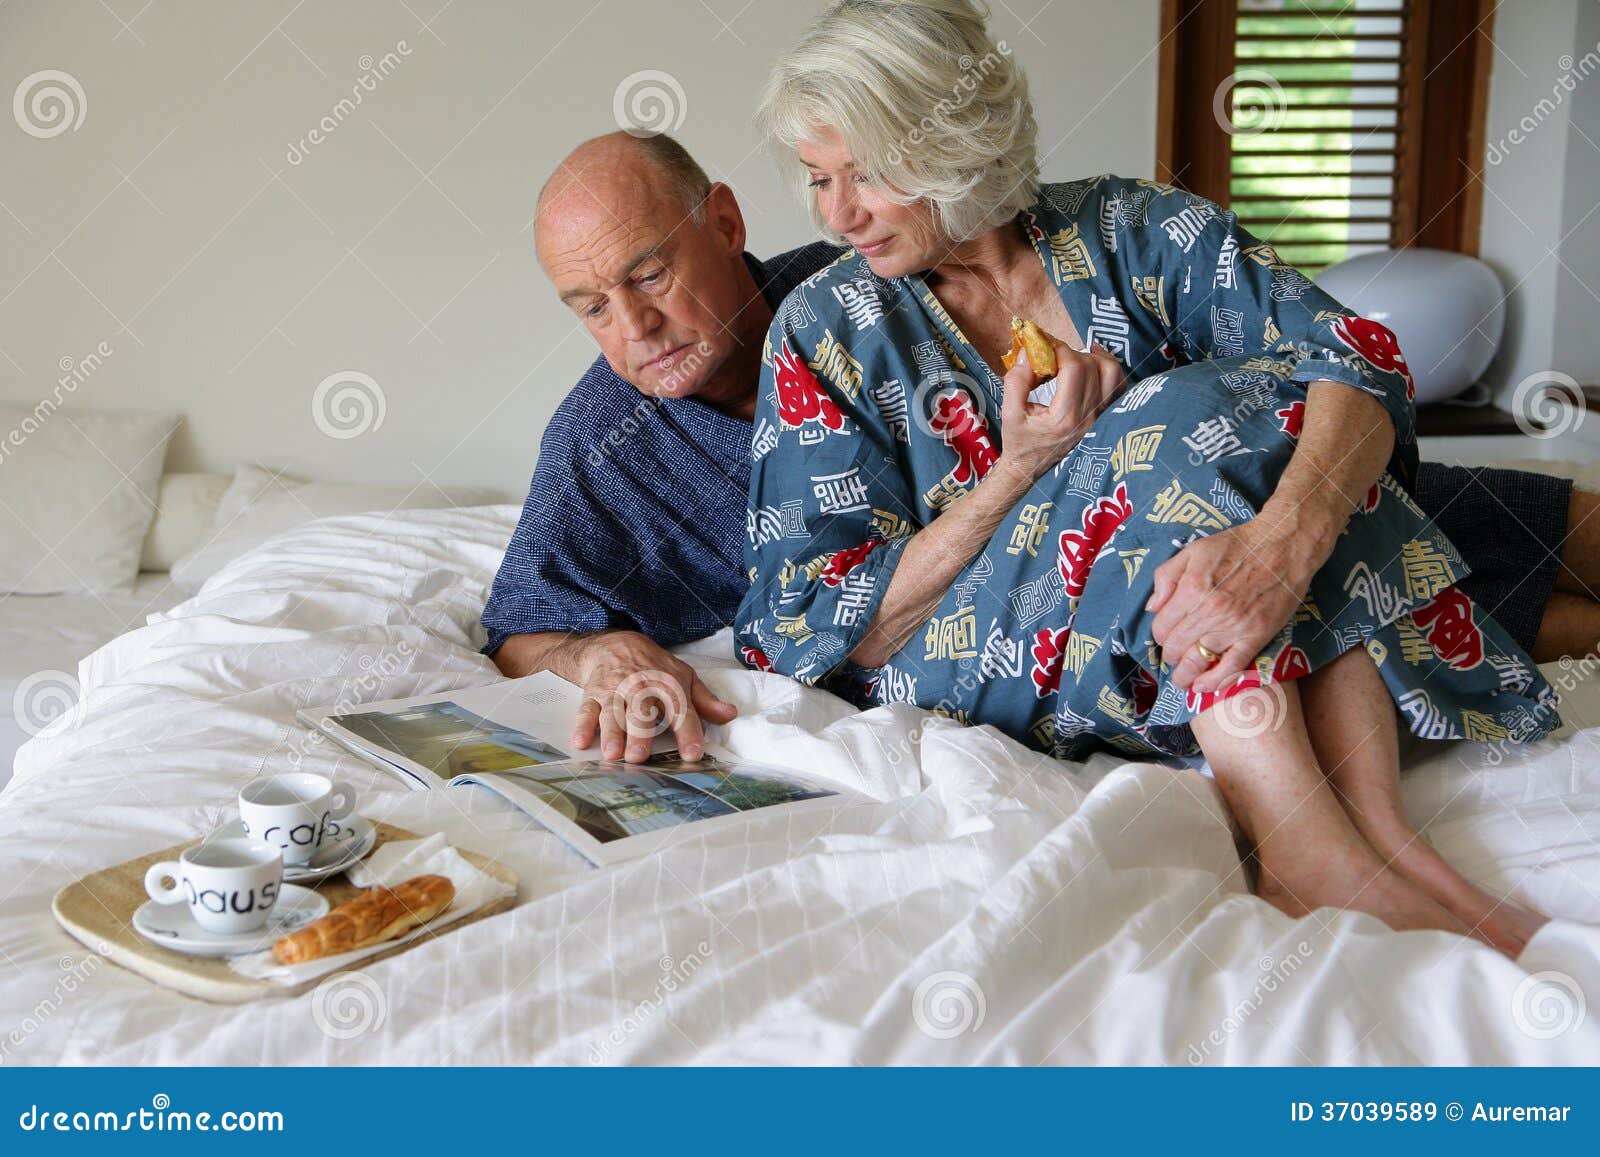 Домашнее пожилых мужа и жены. Пожилые женщины в постели. Пожилая пара в постели. Пожилые женщины на кровати. Пожилая пара в халатах.